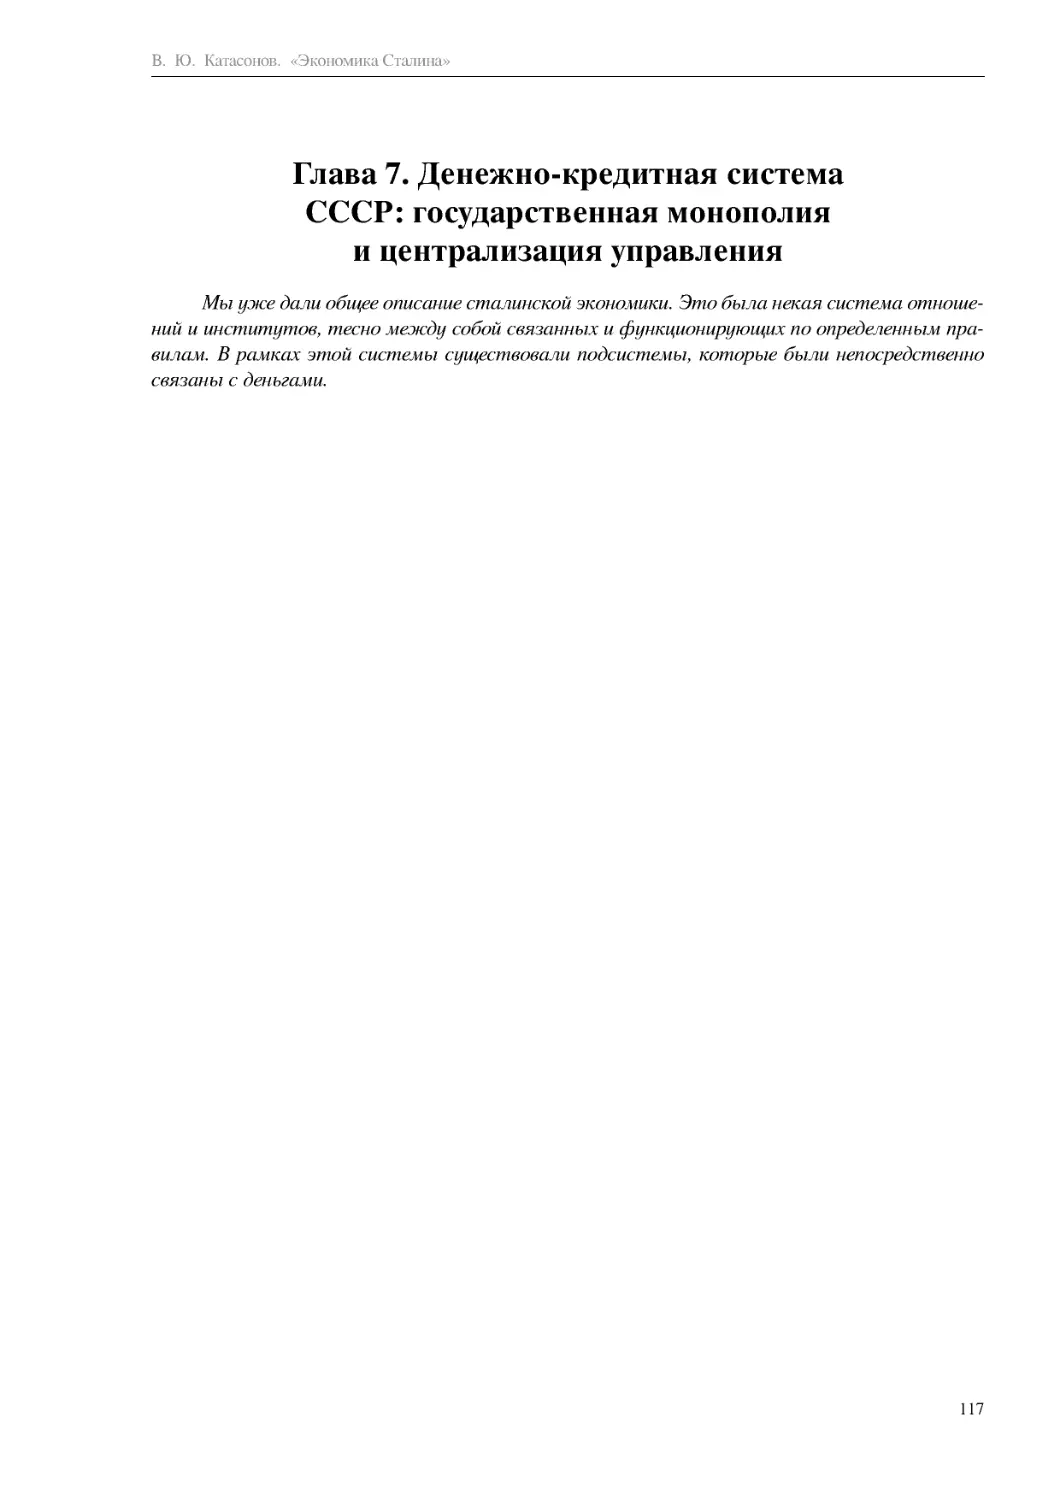 Глава 7. Денежно-кредитная система СССР